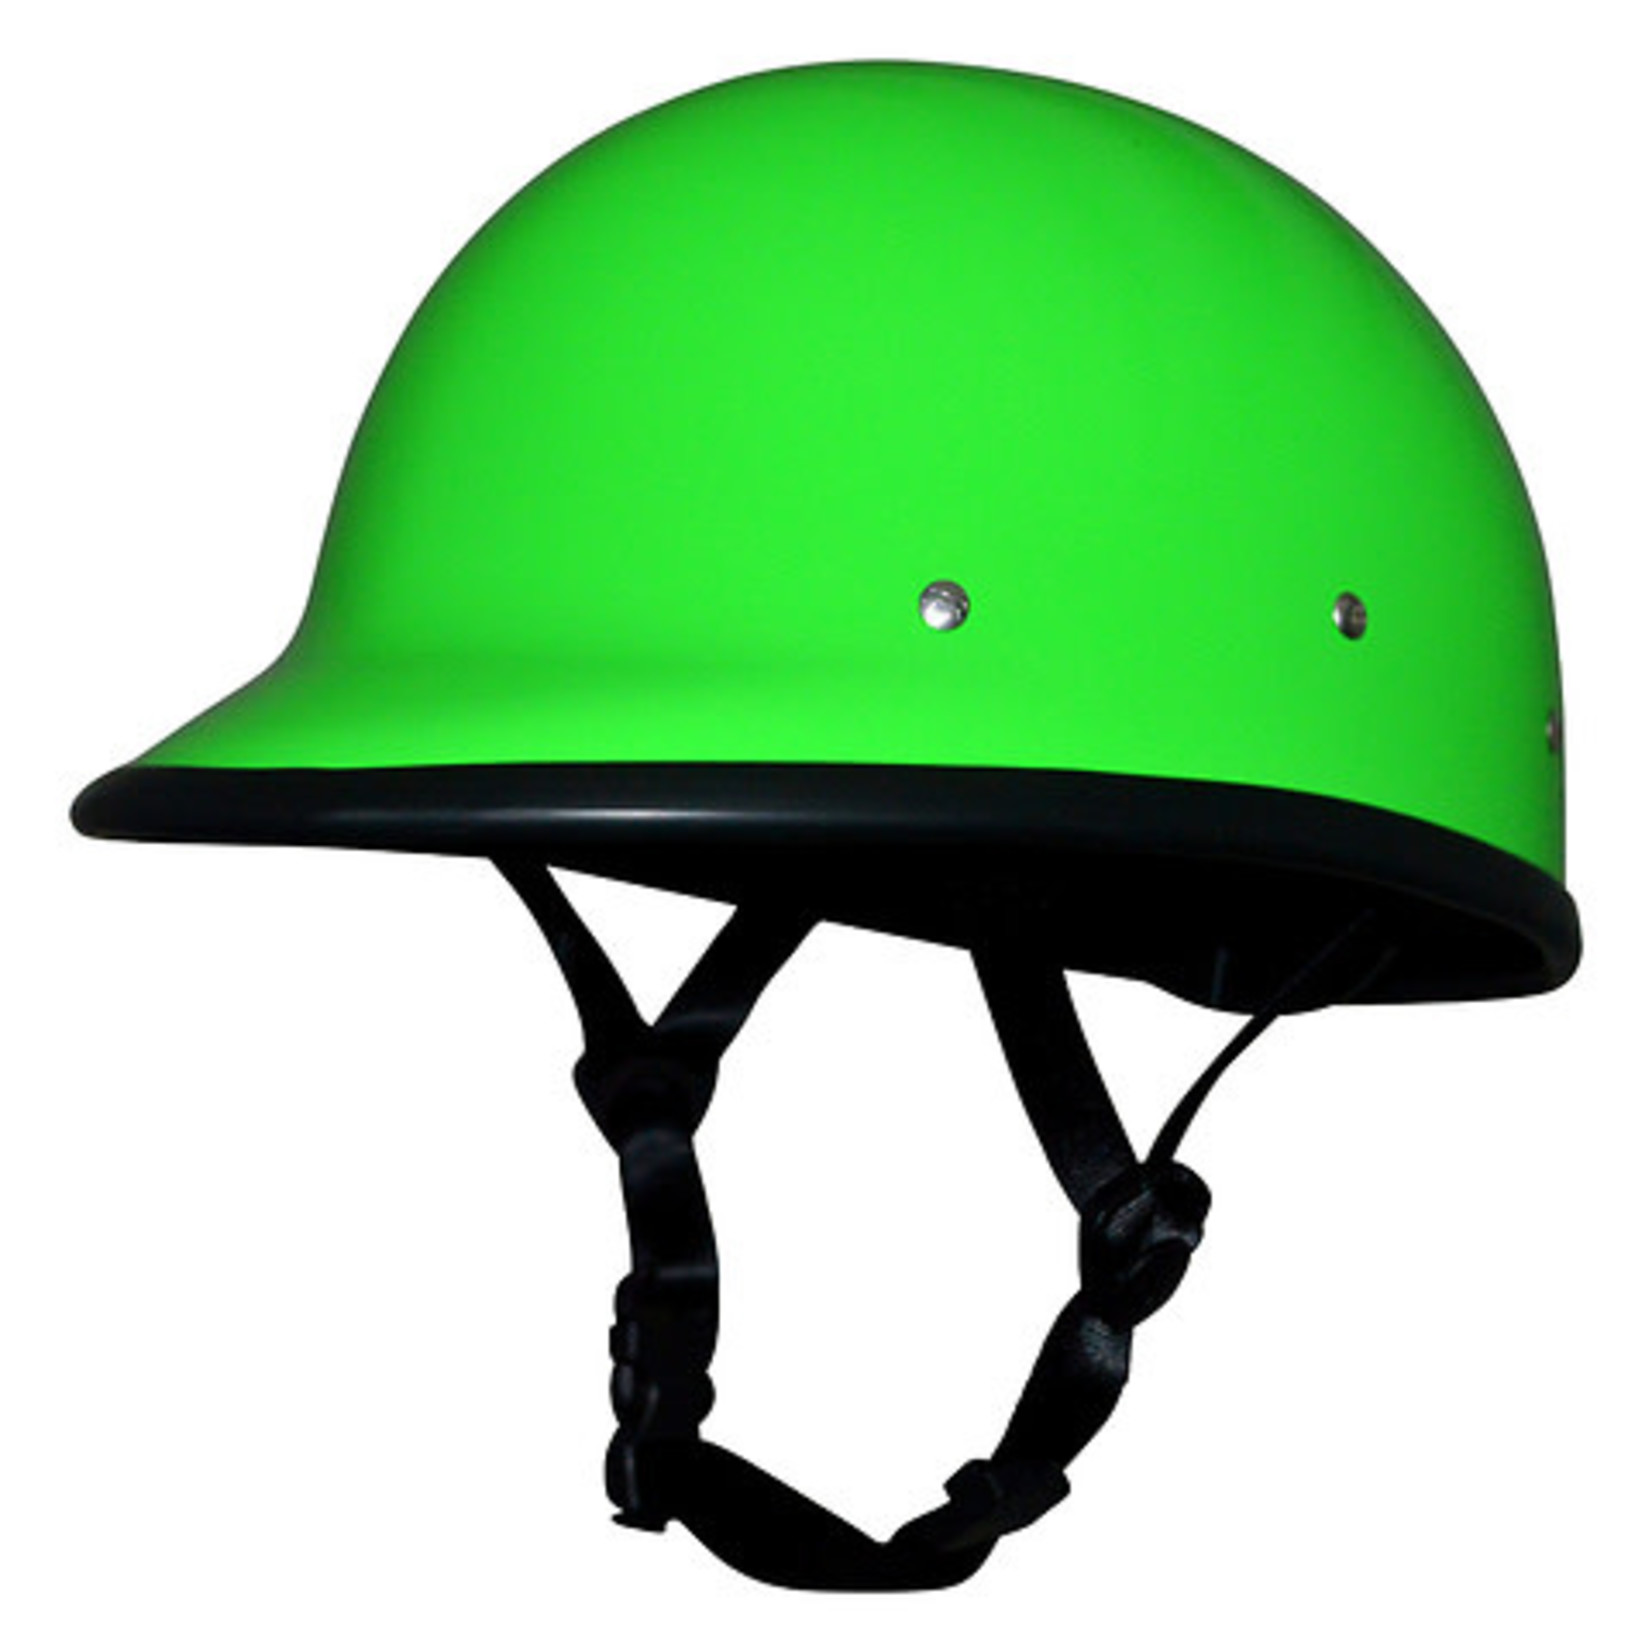 Shred Ready Shred Ready TDUB Helmet